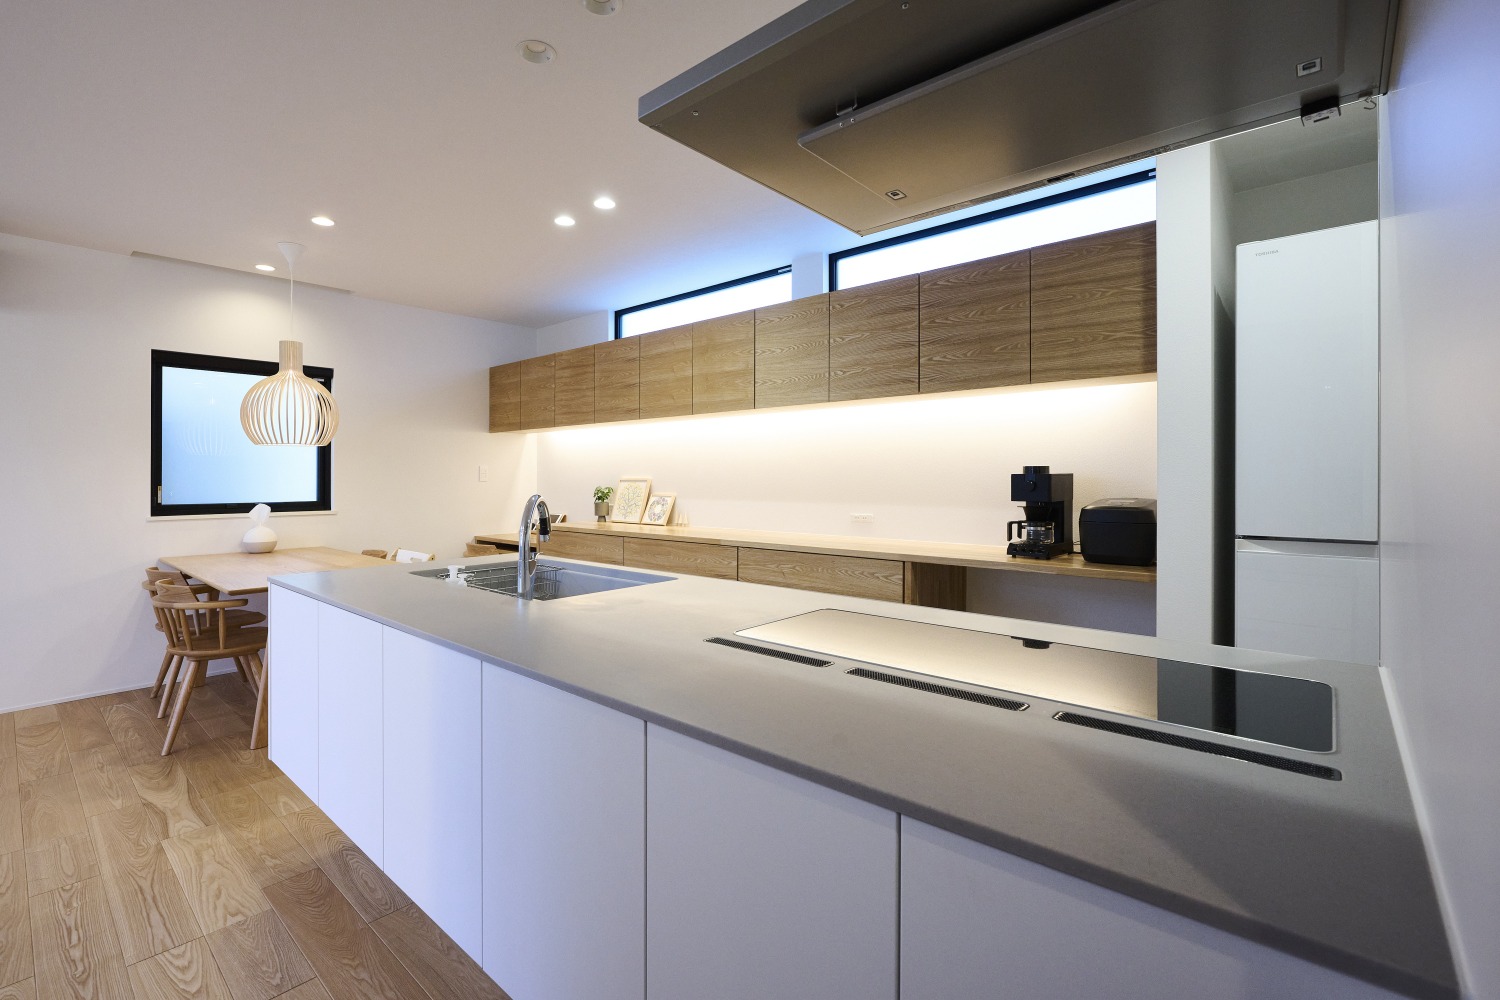 デザイン性と機能性を両立したキッチンの画像